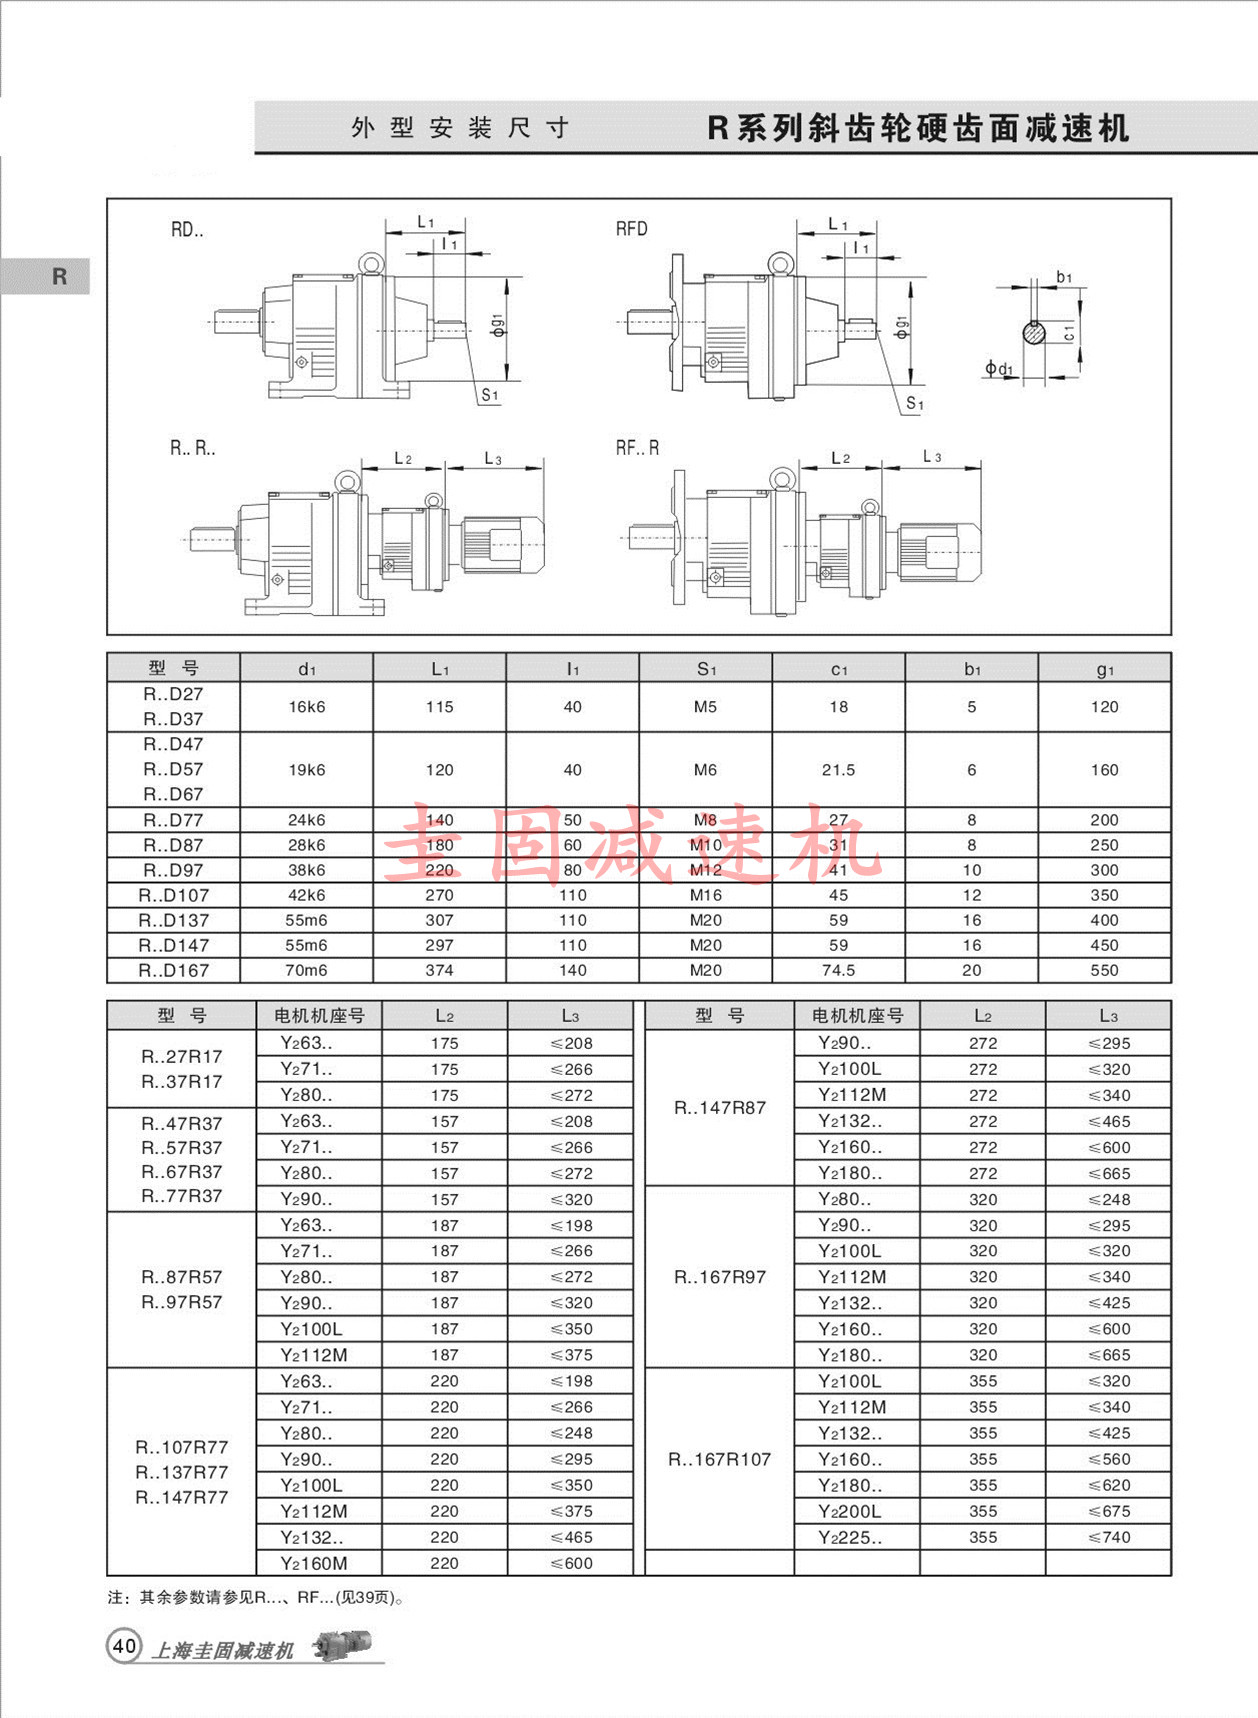 上海圭固R97减速机、R97齿轮减速机、R97减速机3D模型、R97减速机厂家直供 R97减速机,R97齿轮减速机,减速机R97,R97减速器,R97减速电机